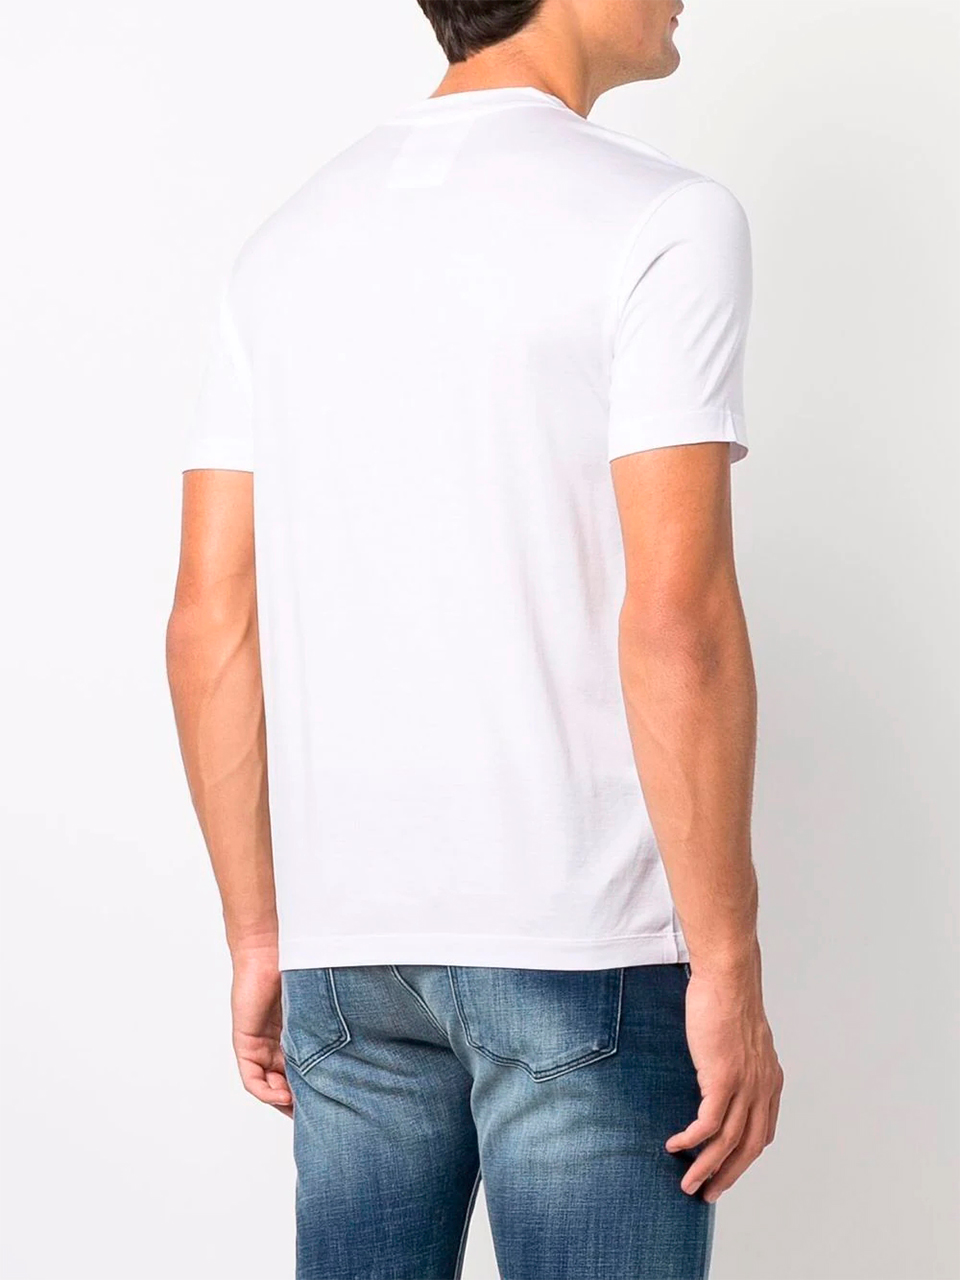 Imagem de: Camiseta Emporio Armani Branca Básica